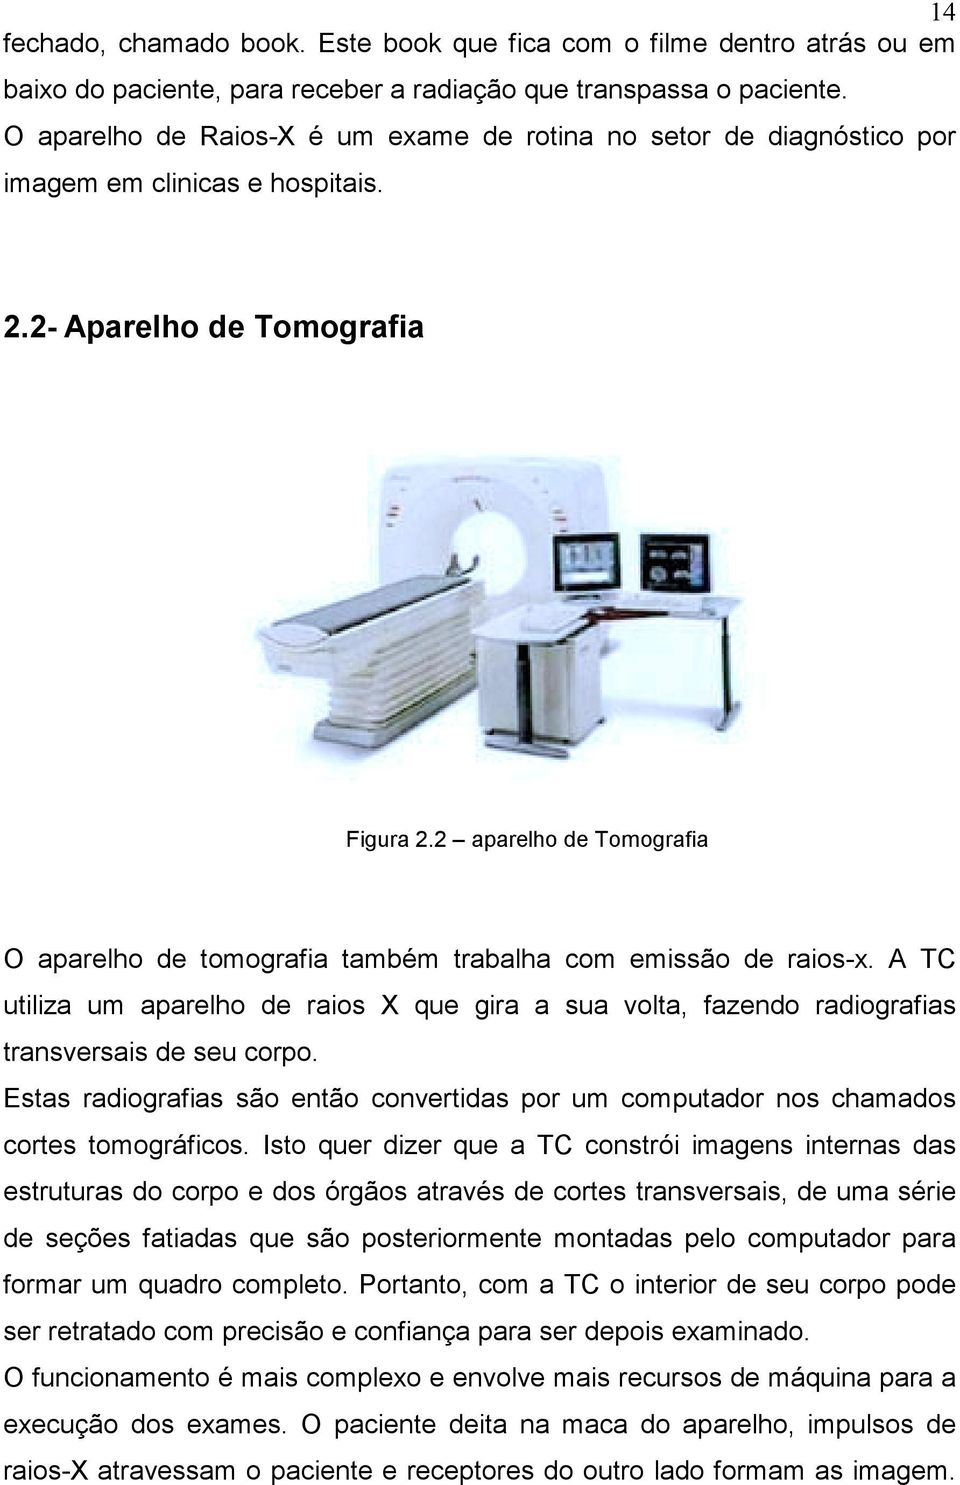 2 aparelho de Tomografia O aparelho de tomografia também trabalha com emissão de raios-x. A TC utiliza um aparelho de raios X que gira a sua volta, fazendo radiografias transversais de seu corpo.